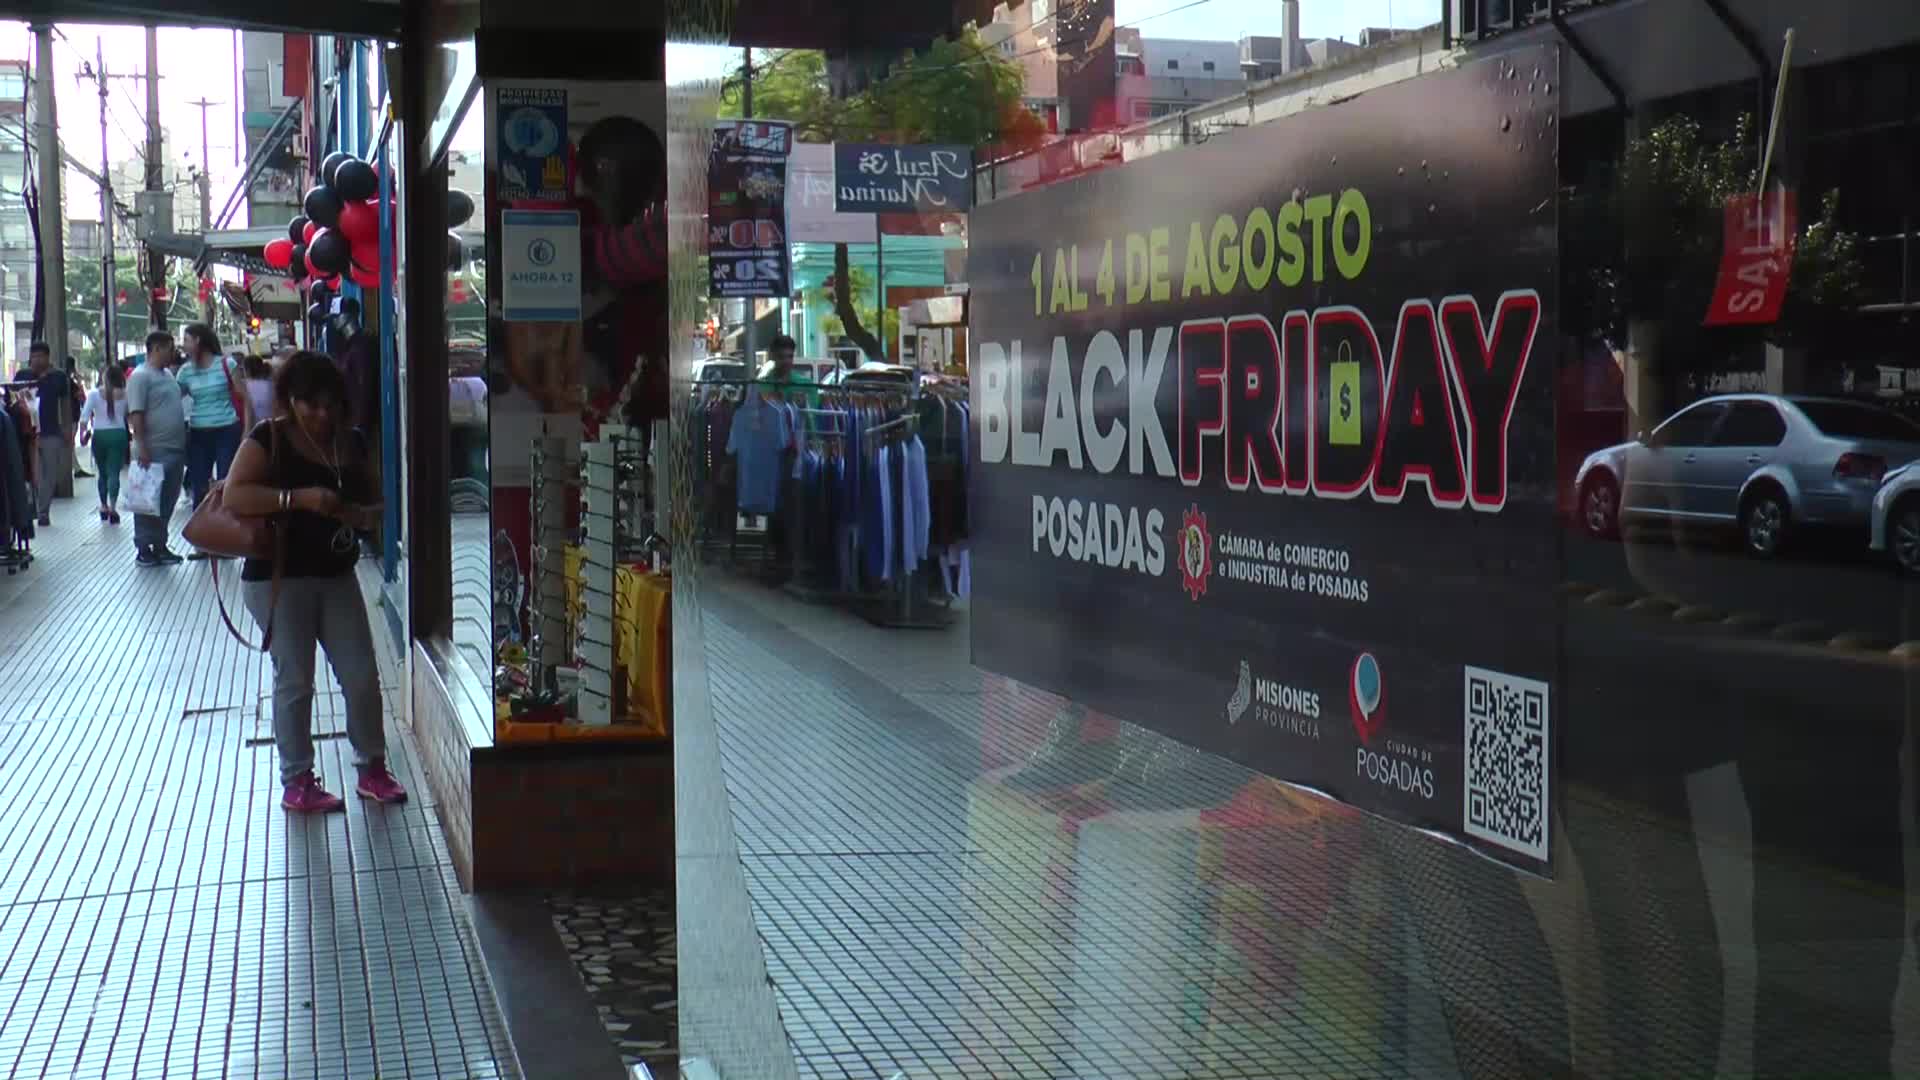 Black Friday en Posadas: se inició la gran feria de descuentos